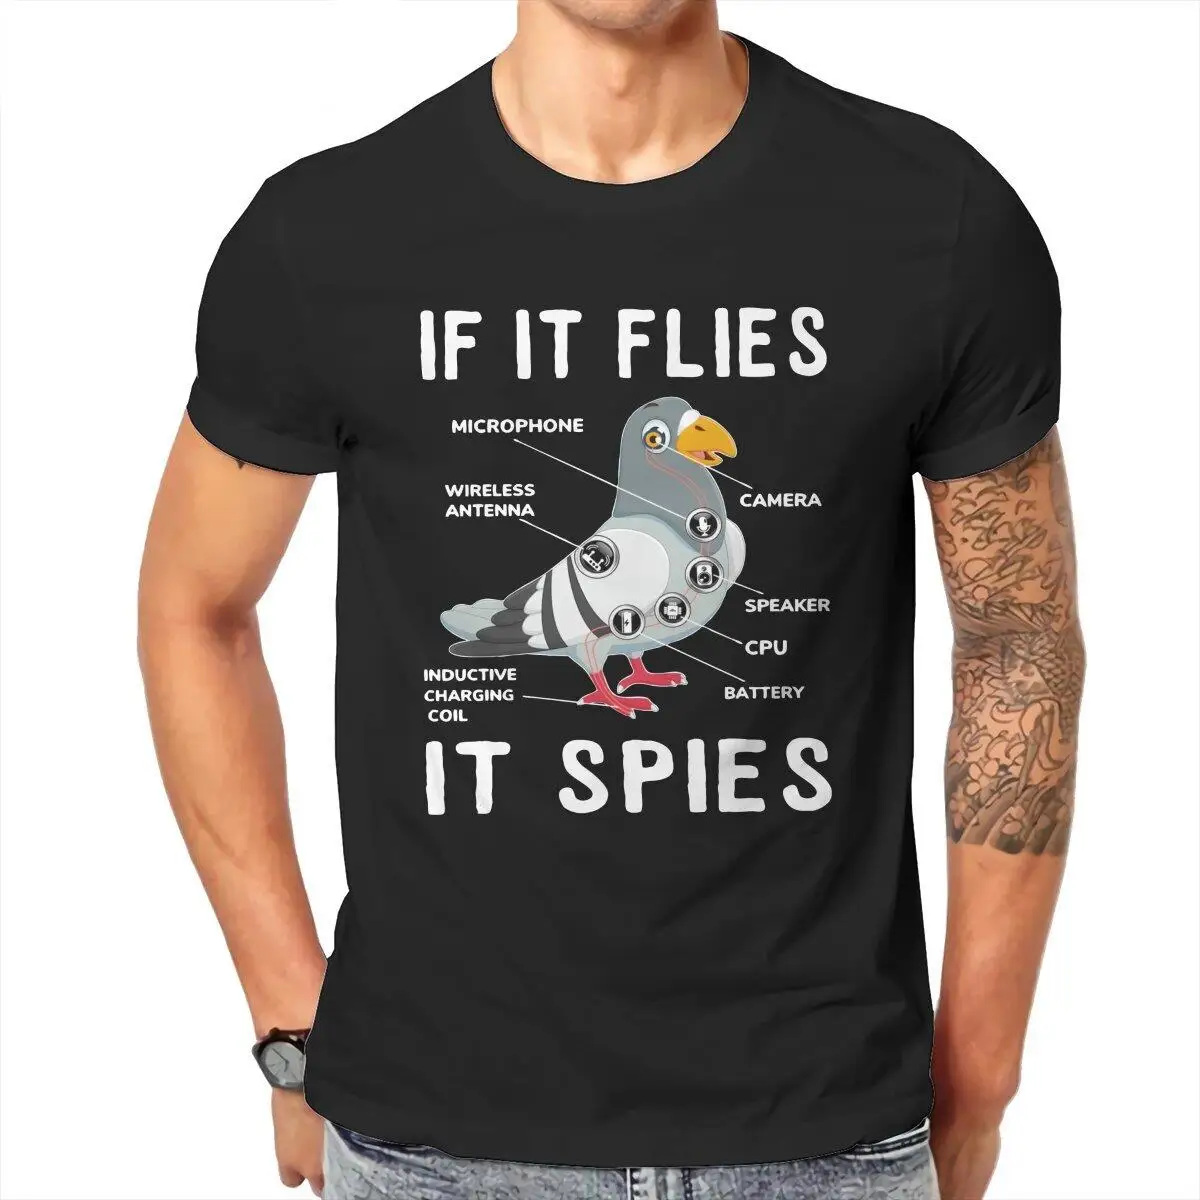 Anatomy Bird  T-Shirt Men CPU Geek Nerd Freak Hacker Pc Gamer Hipster 100% Cotton Tees Short Sleeve T Shirts Gift Idea Clothes